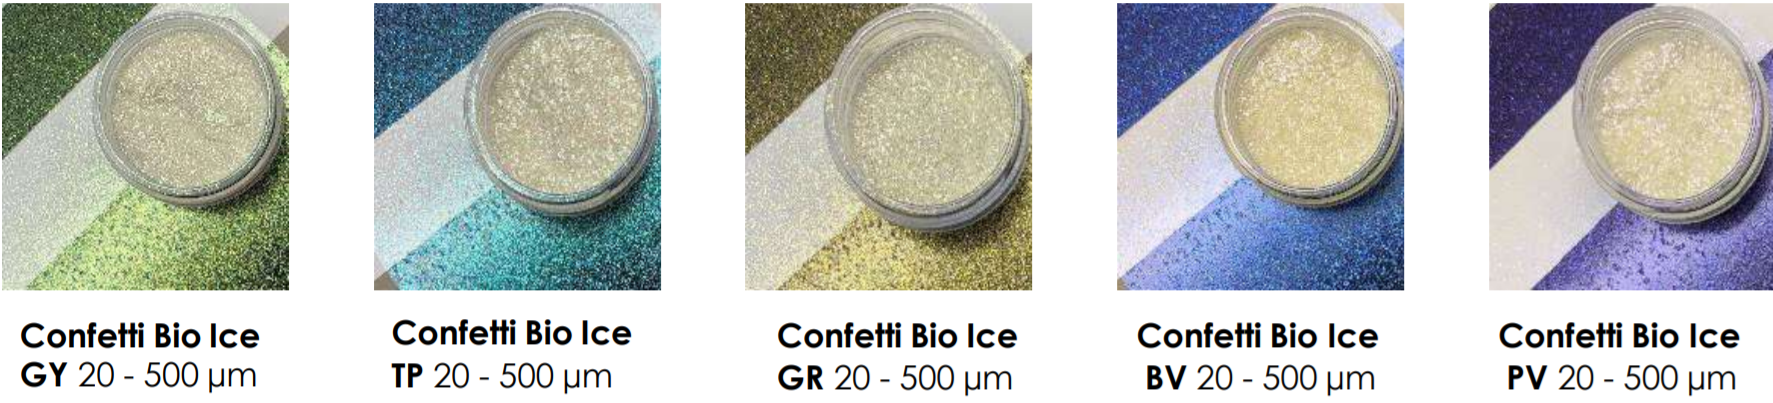 Confetti Bio Ice コンフェッティ バイオ アイス